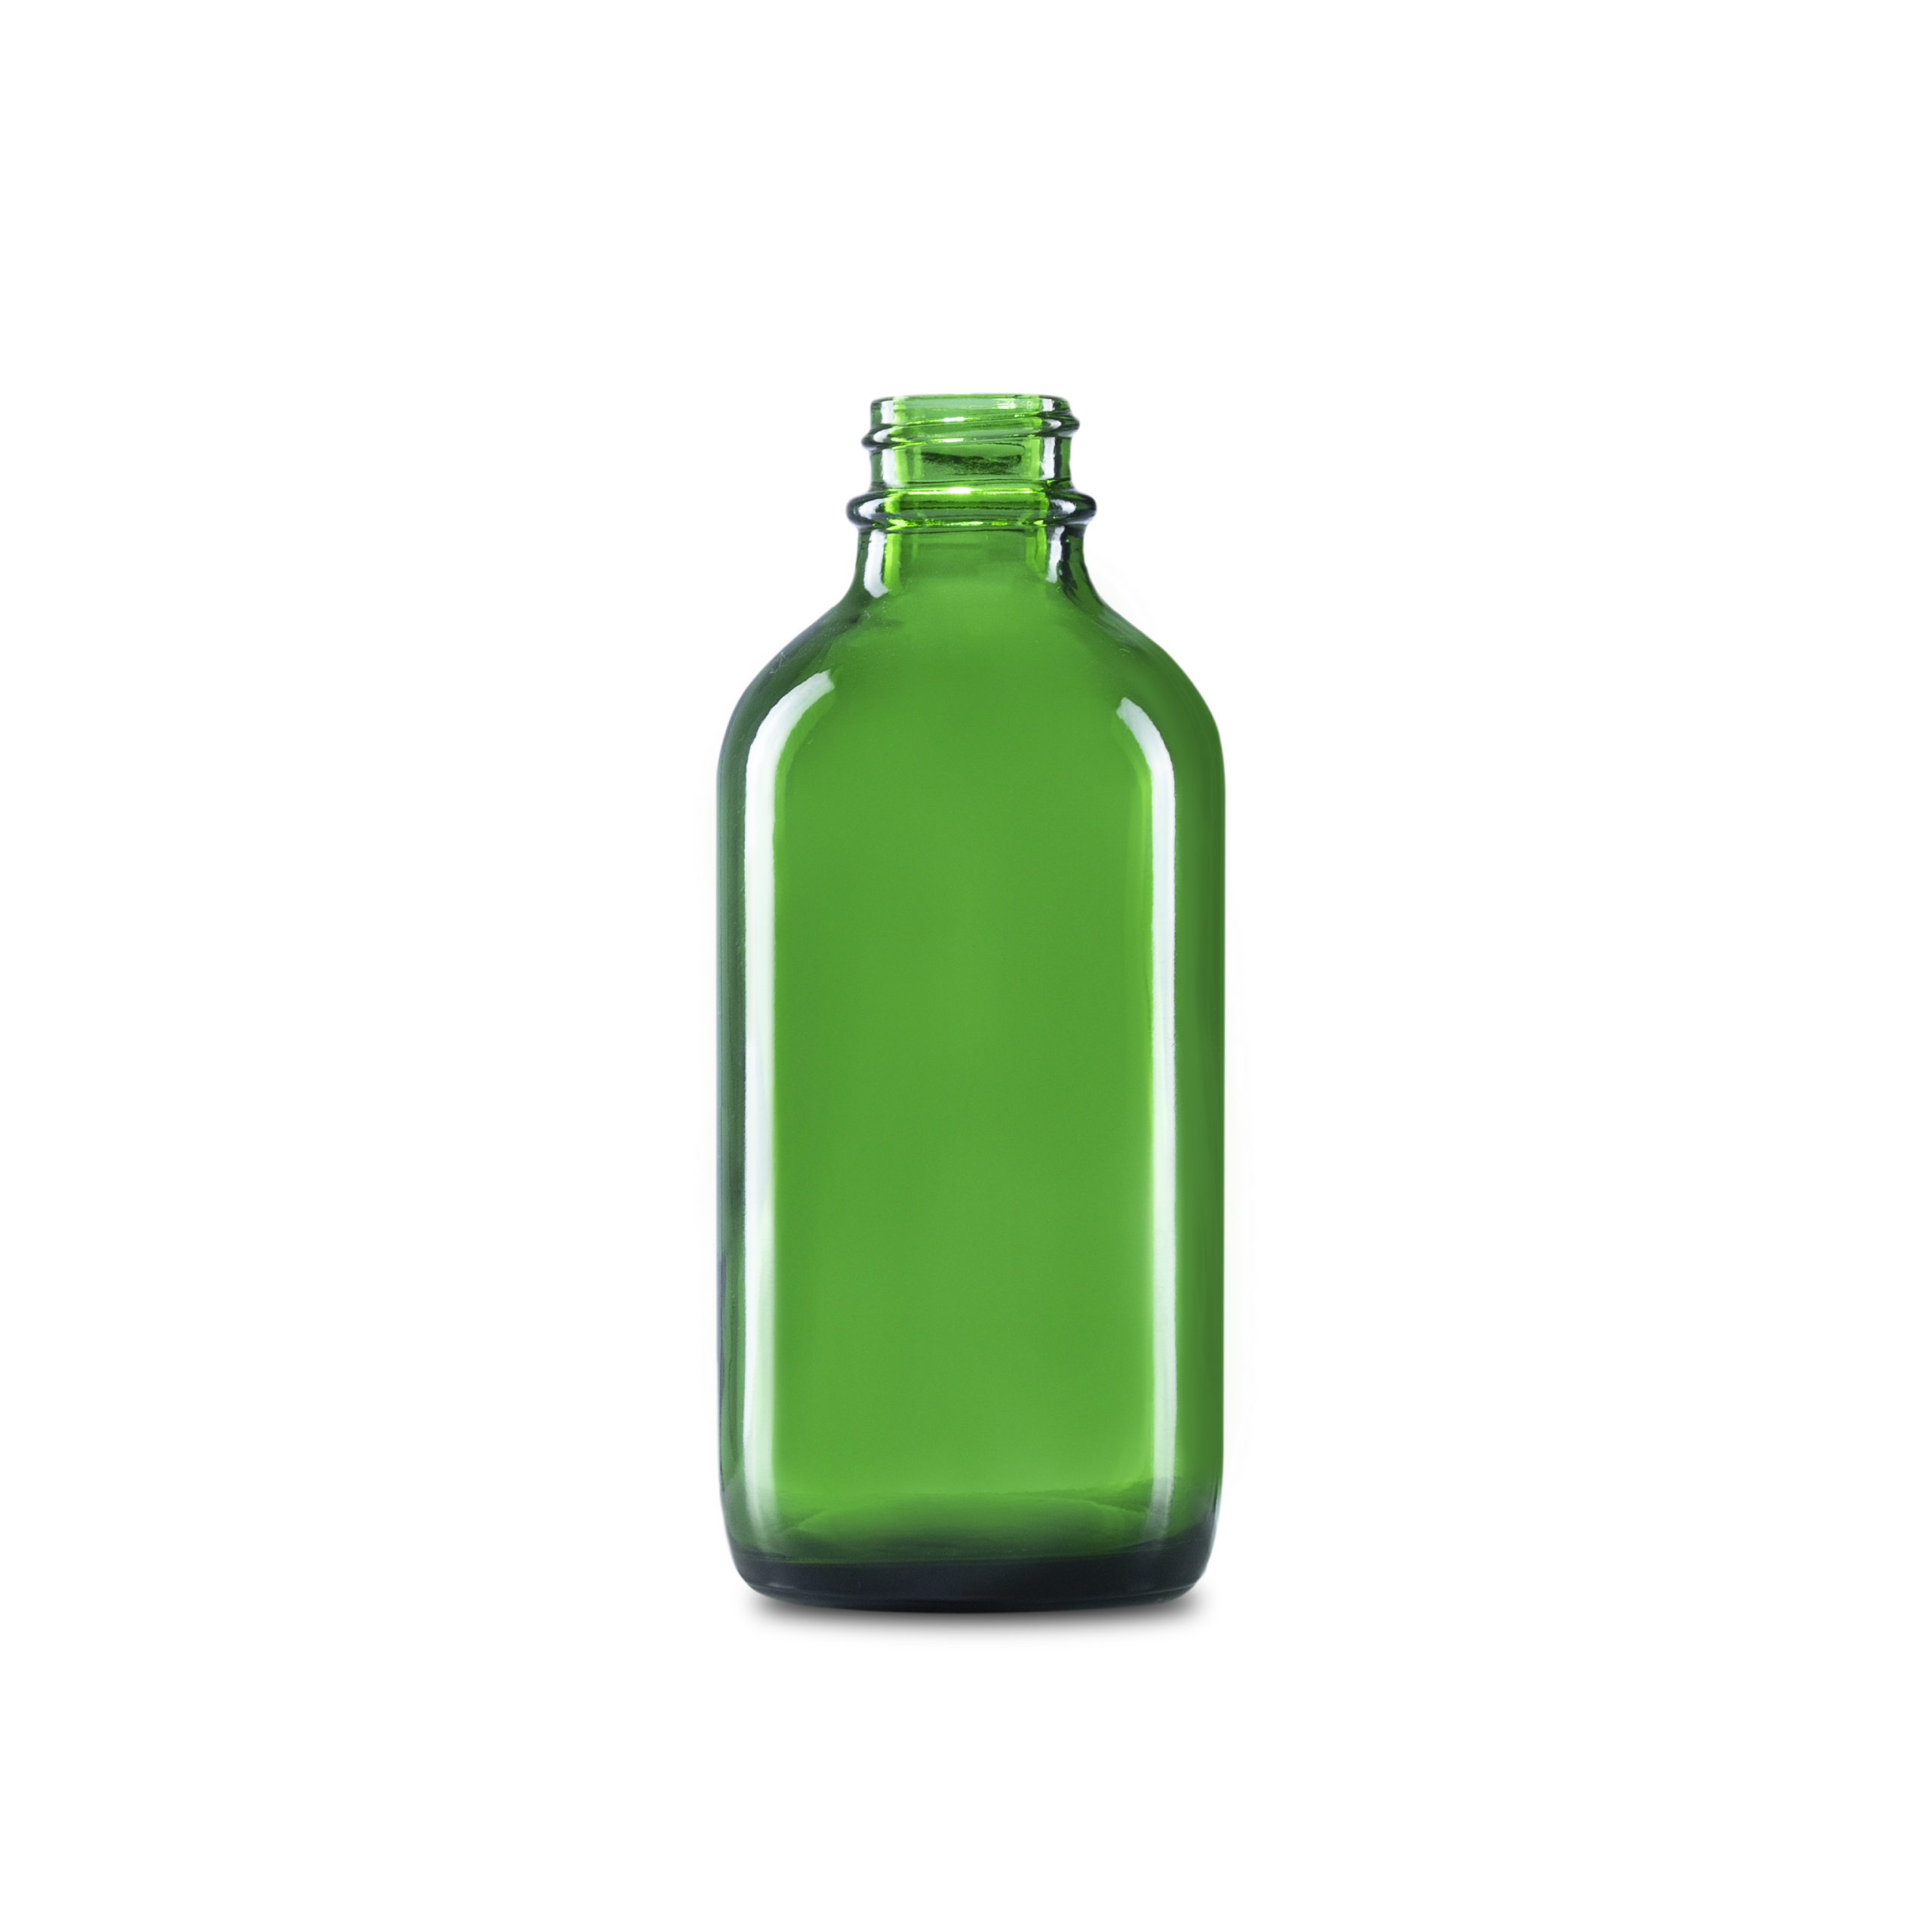 2oz (60ml) Green Big Bead Boston Round Glass Bottle - 20-400 Neck